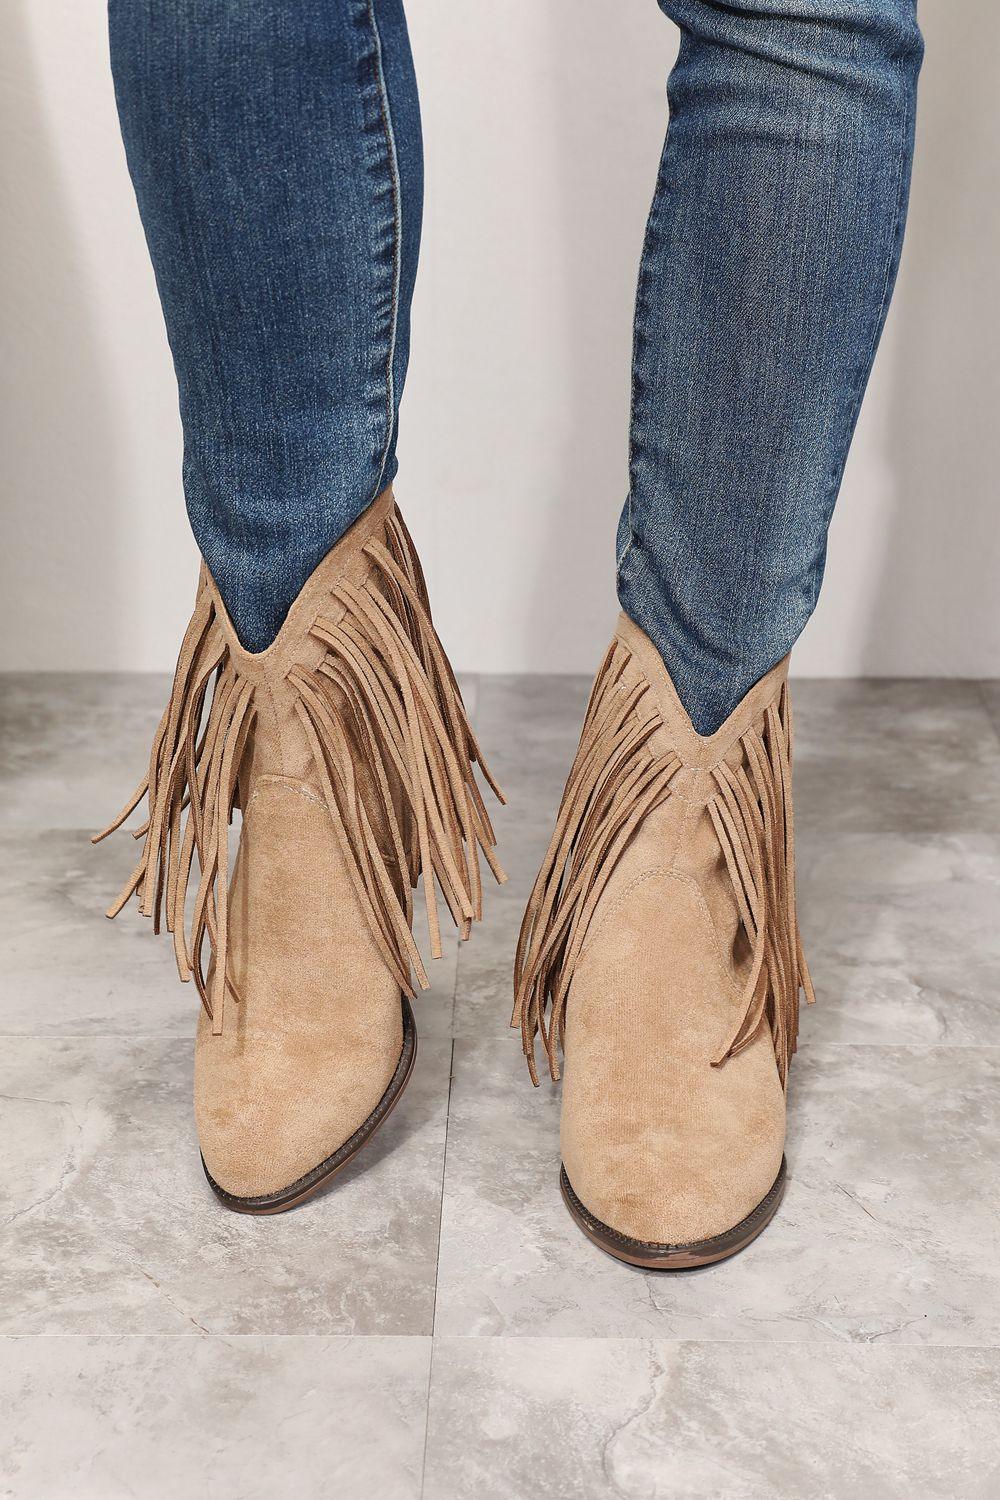 Legend Women's Fringe Cowboy Western Ankle Boots - Jessiz Boutique